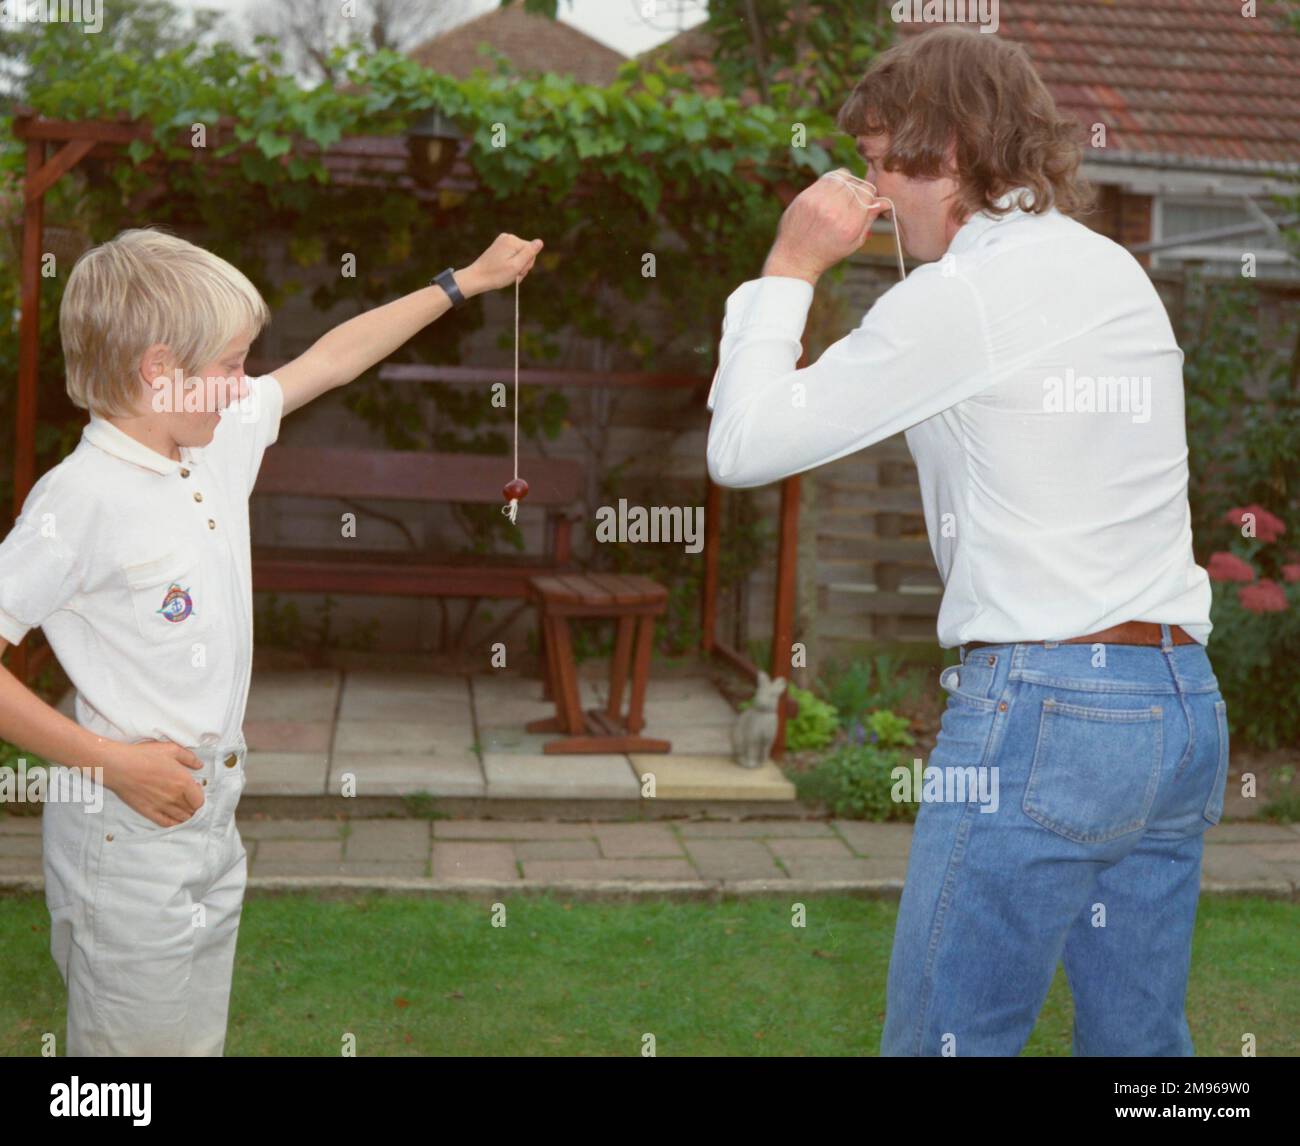 Un garçon et un jeune homme jouant à conkers dans le jardin. Le garçon tient son conker stable pour que l'homme frappe. Banque D'Images